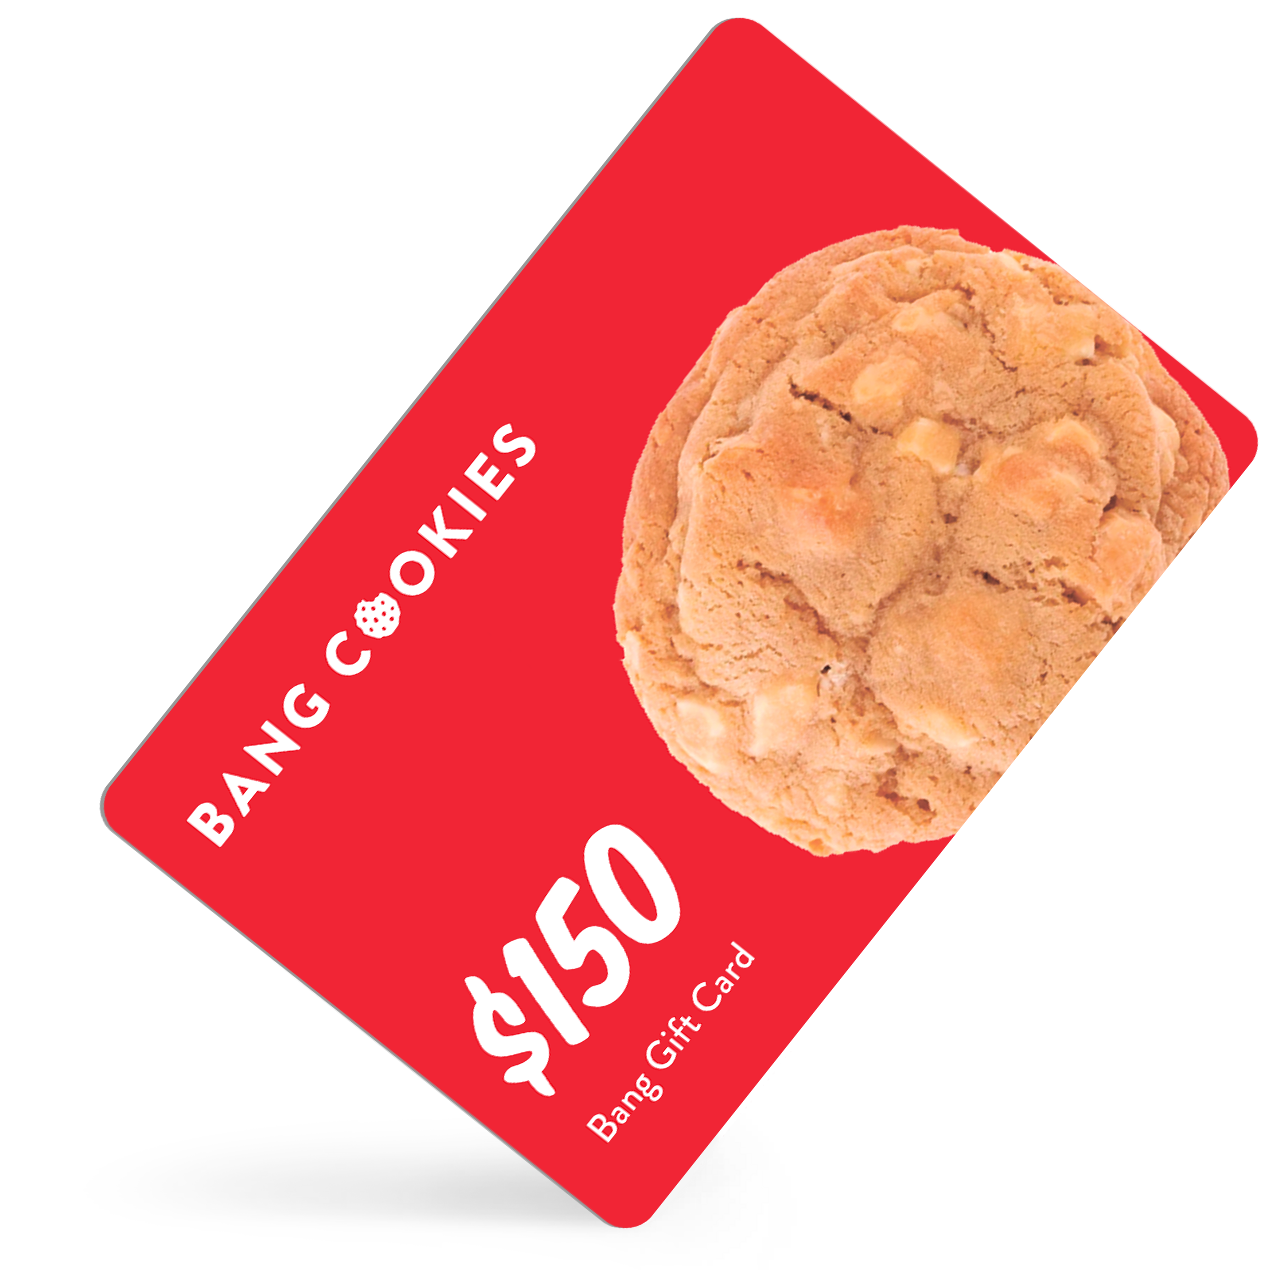 $150 Bang Cookies Gift Card